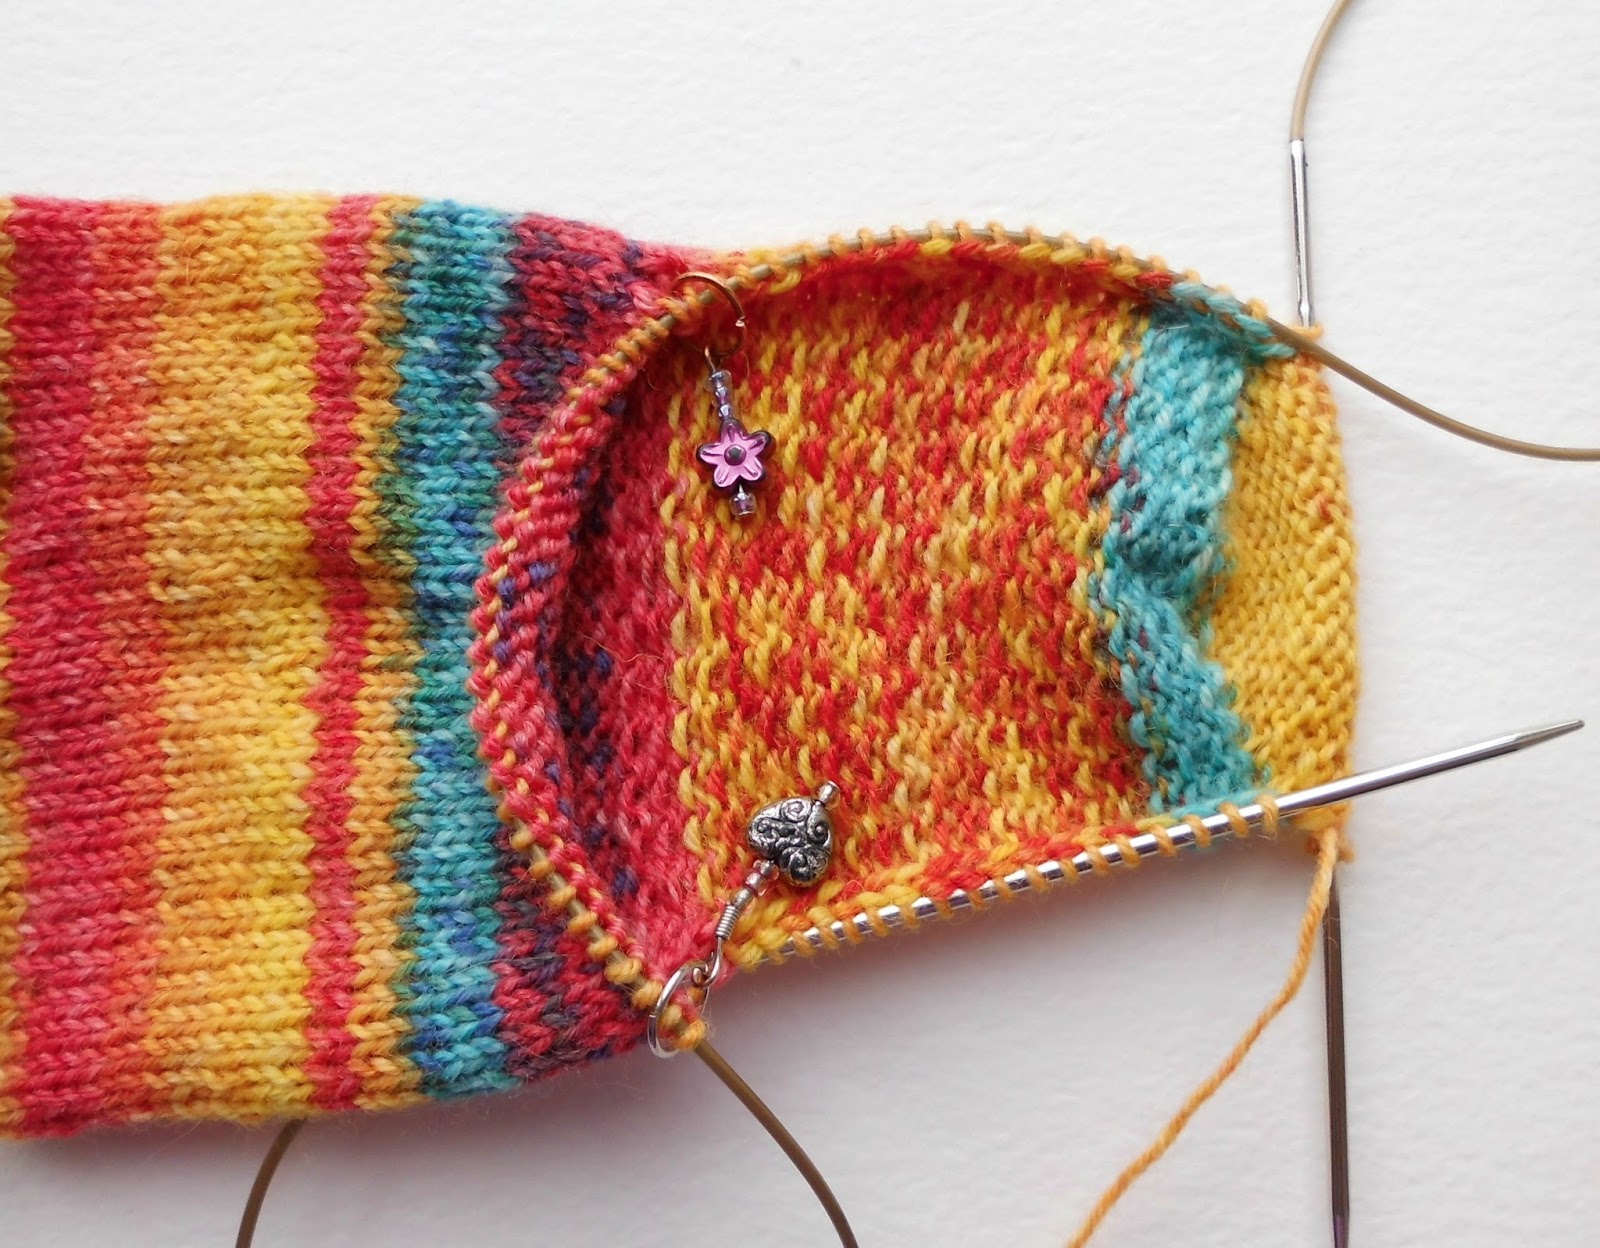 Winwick Mum: Beginner sock knitting: Sockalong - Week 2 - Heel flap ...